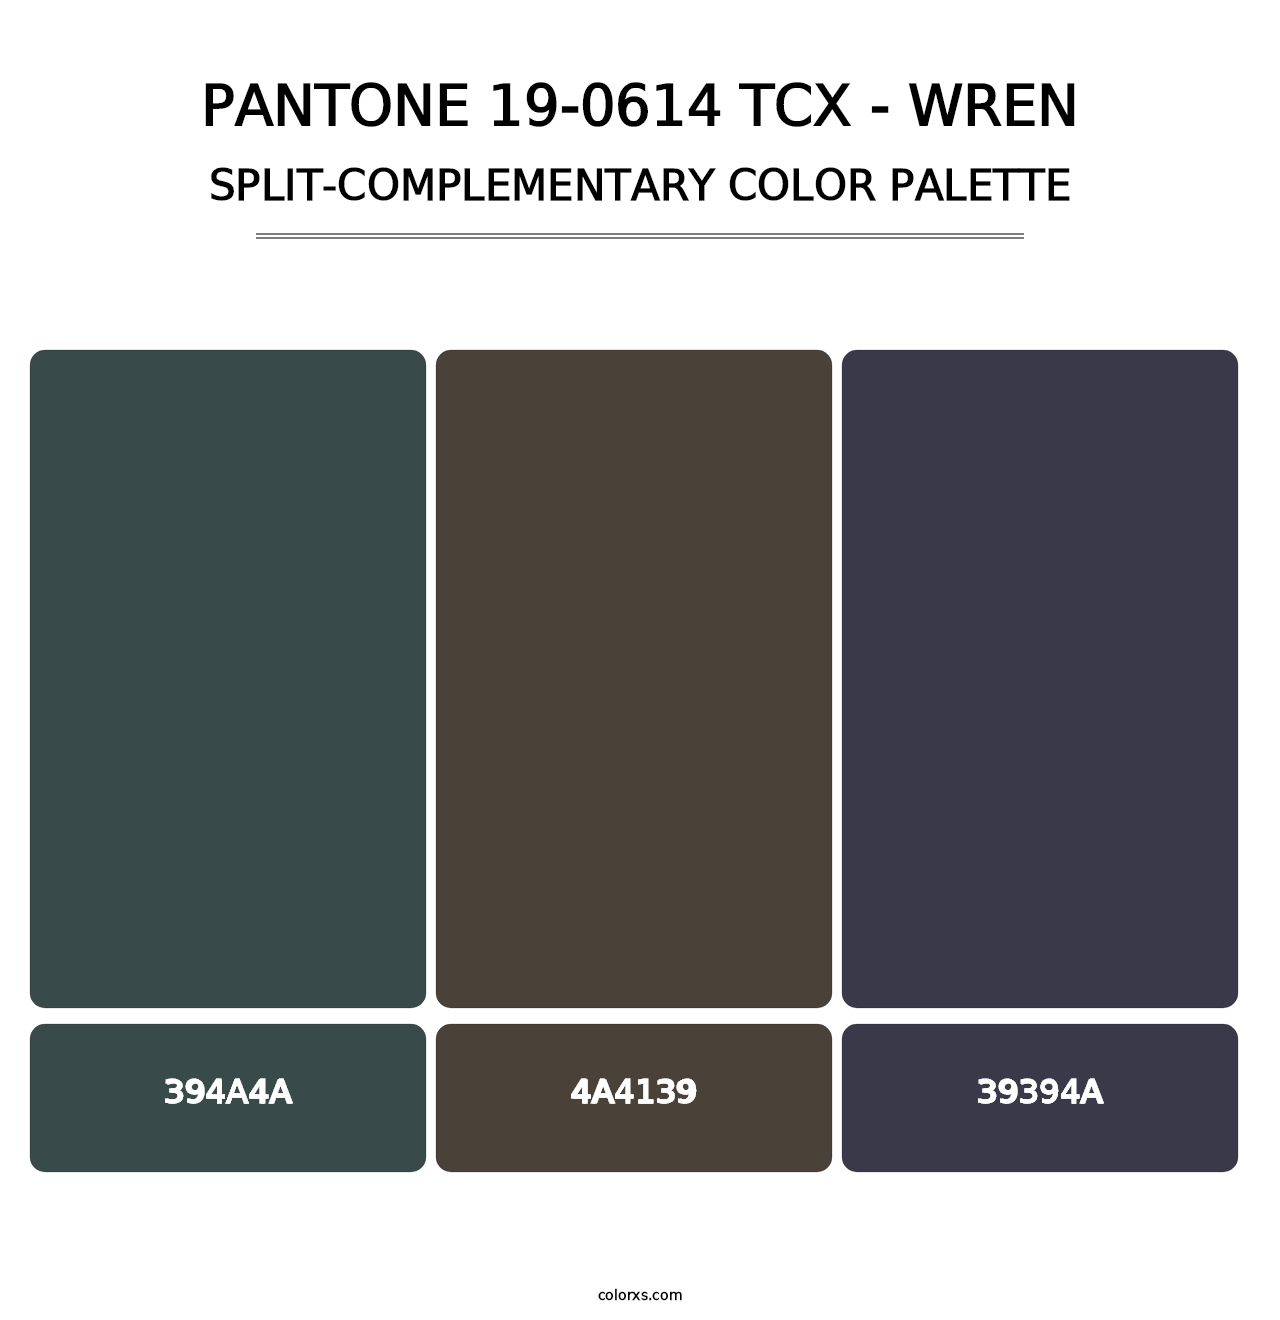 PANTONE 19-0614 TCX - Wren - Split-Complementary Color Palette